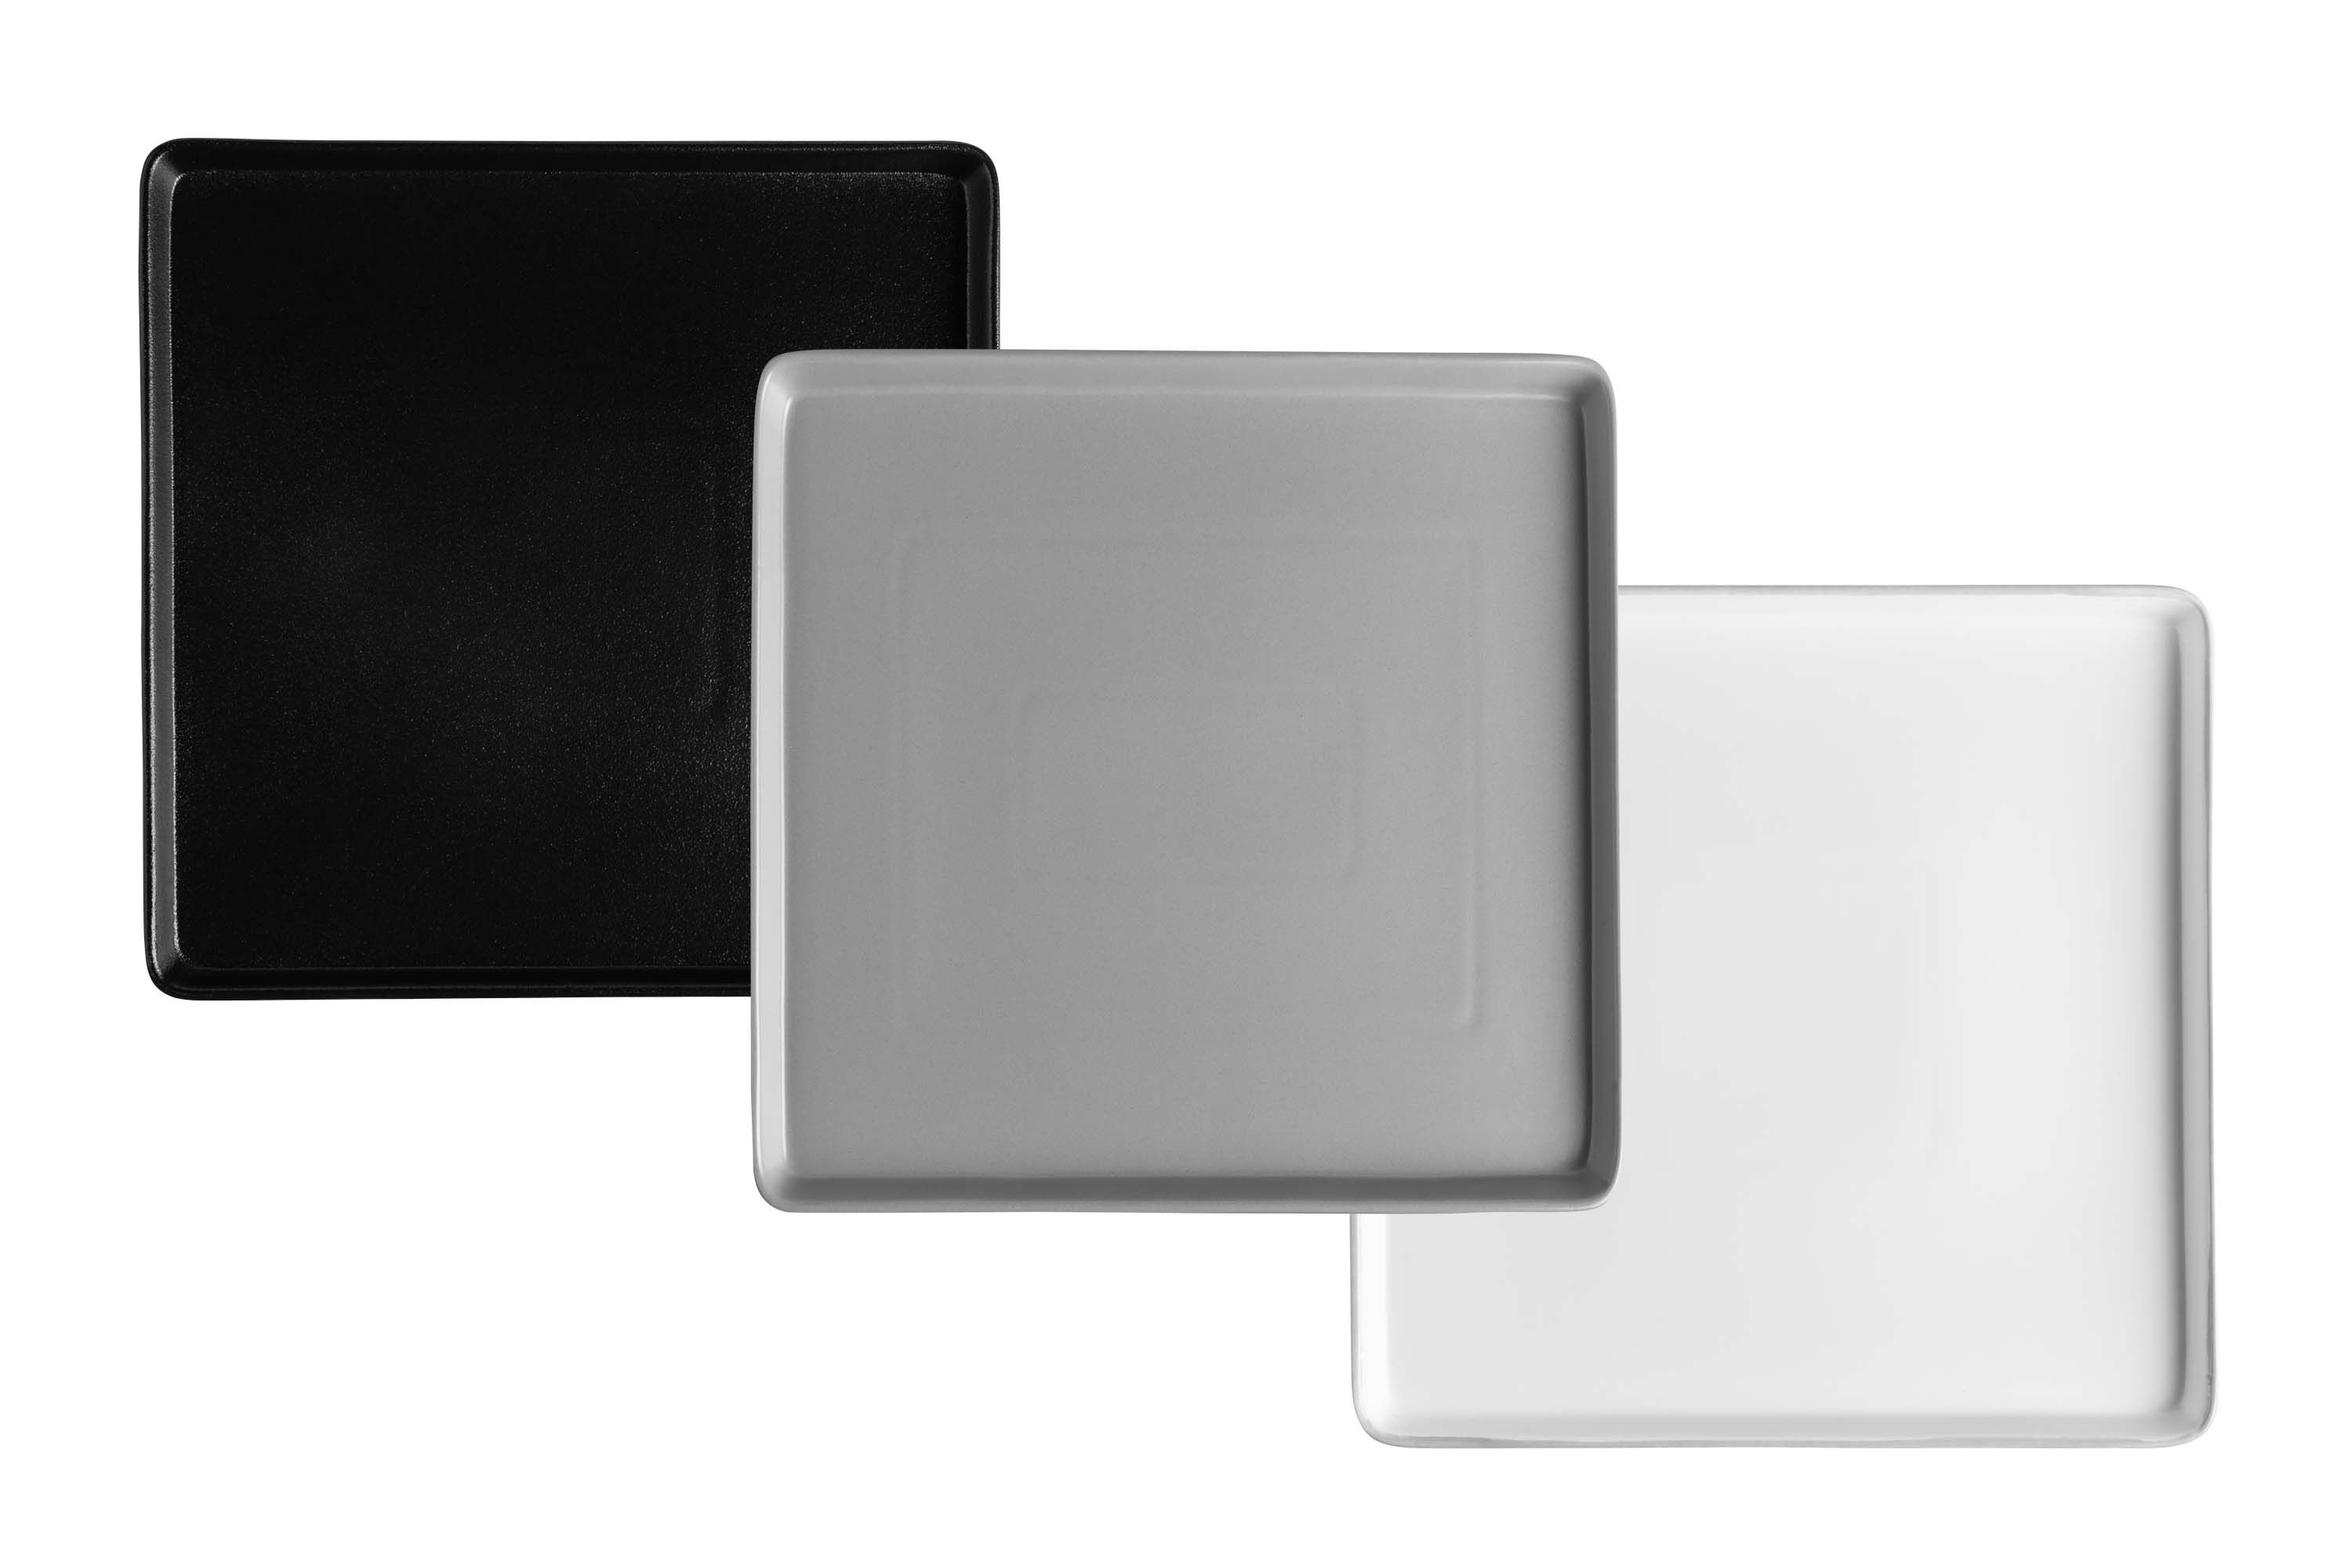 Drei quadratische Servierplatten in schwarz, weiß und grau